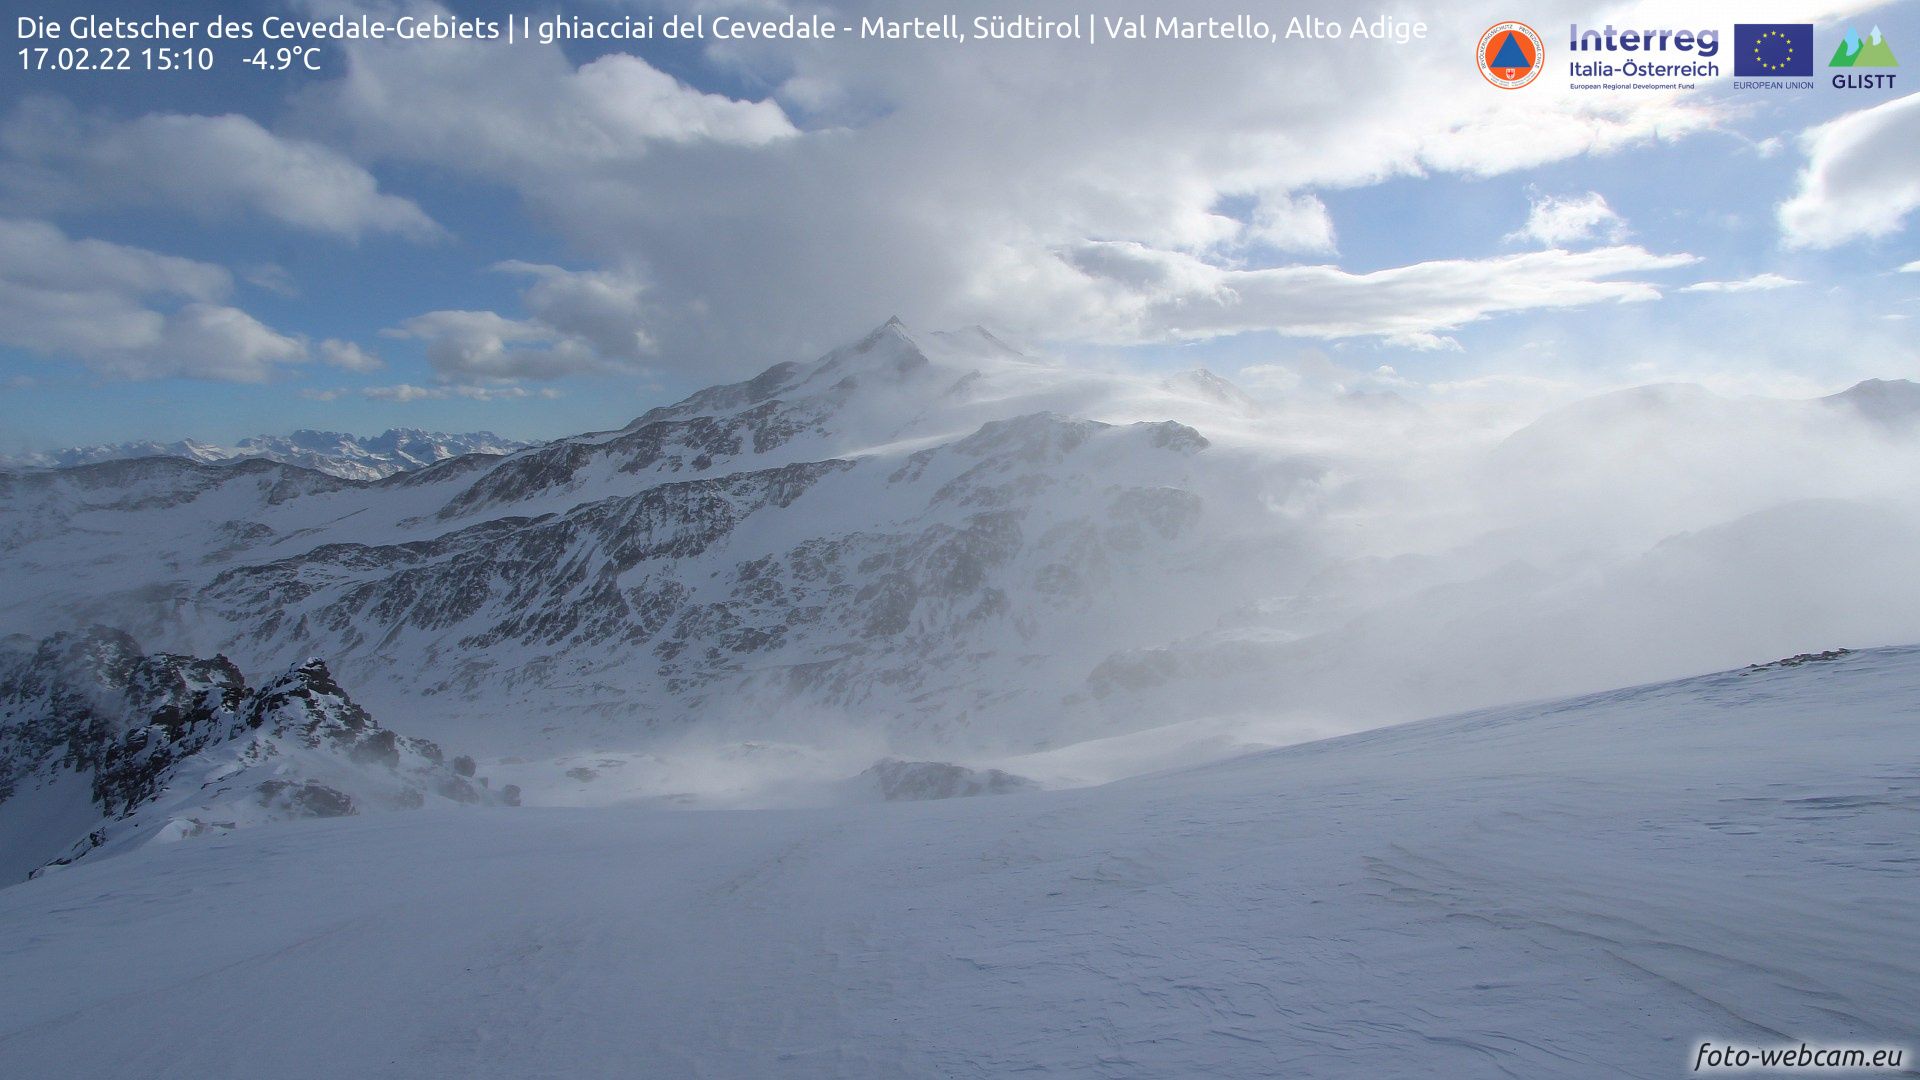 Flinke storm in de Alpen (foto-webcam.eu)